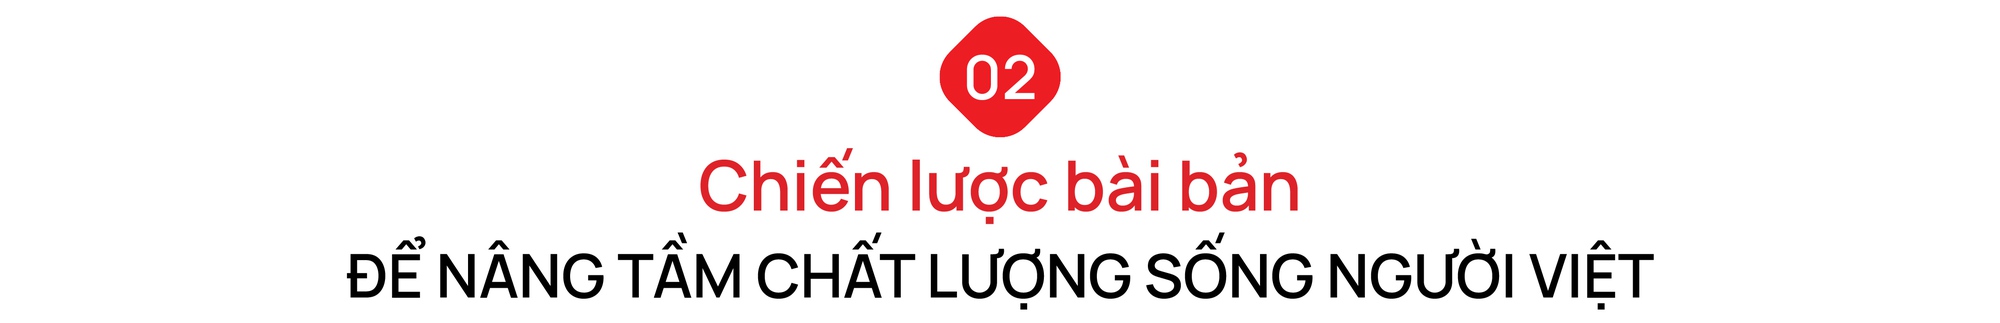 Hành trình 15 năm LOTTE Mart nâng tầm chất lượng cuộc sống người Việt trong dòng chảy xã hội hiện đại - Ảnh 5.